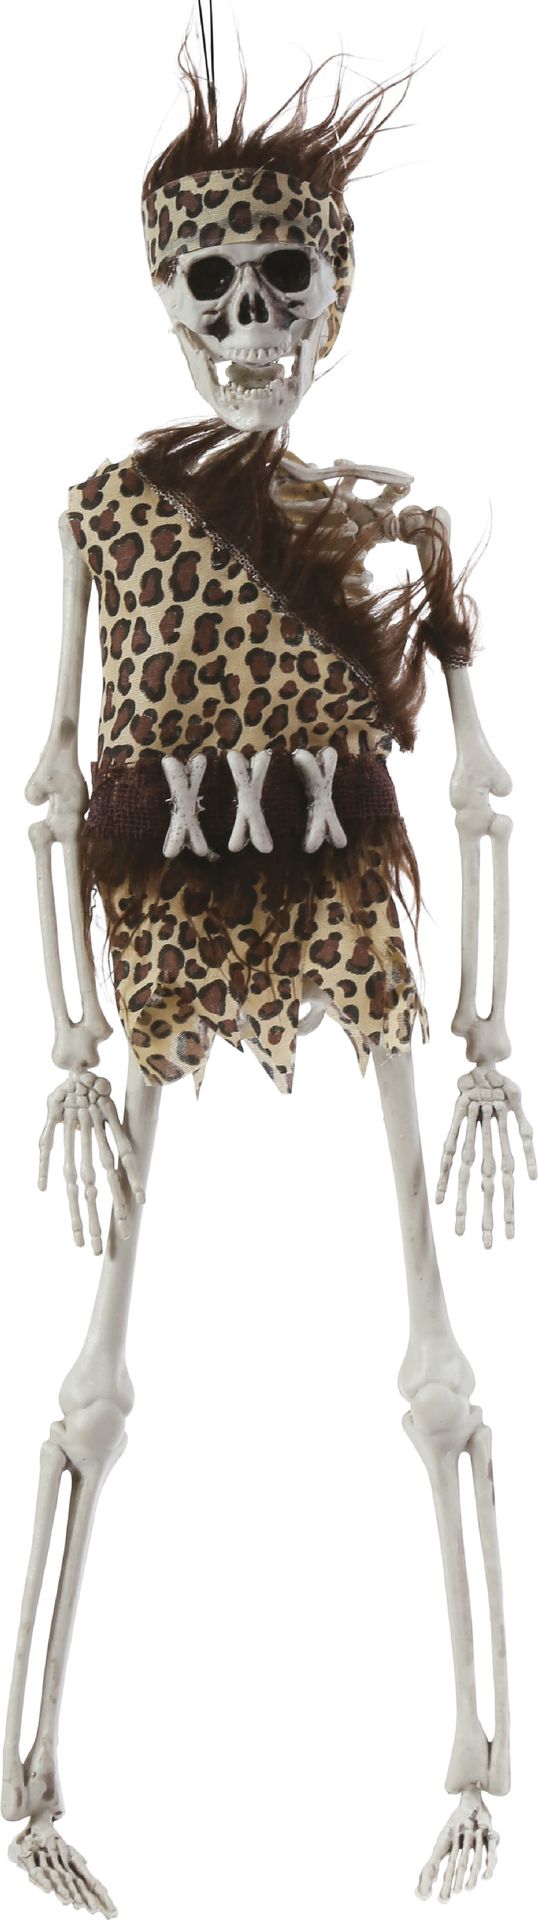 Hangend skelet holbewoner